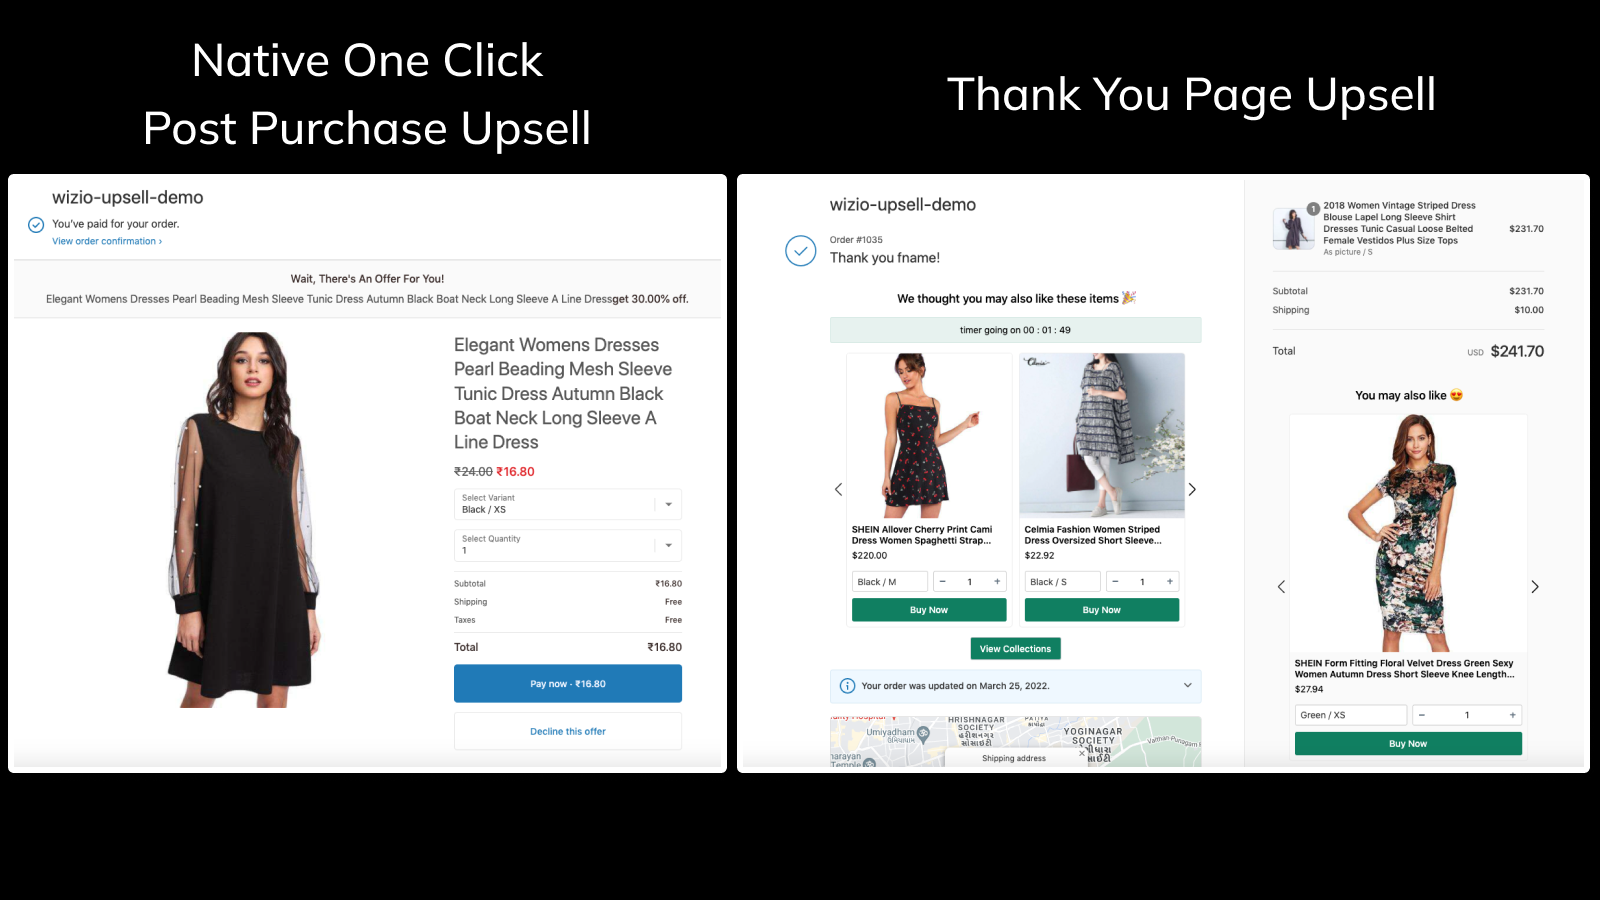 inbyggd enklicks post purchase och tack-sida upsell